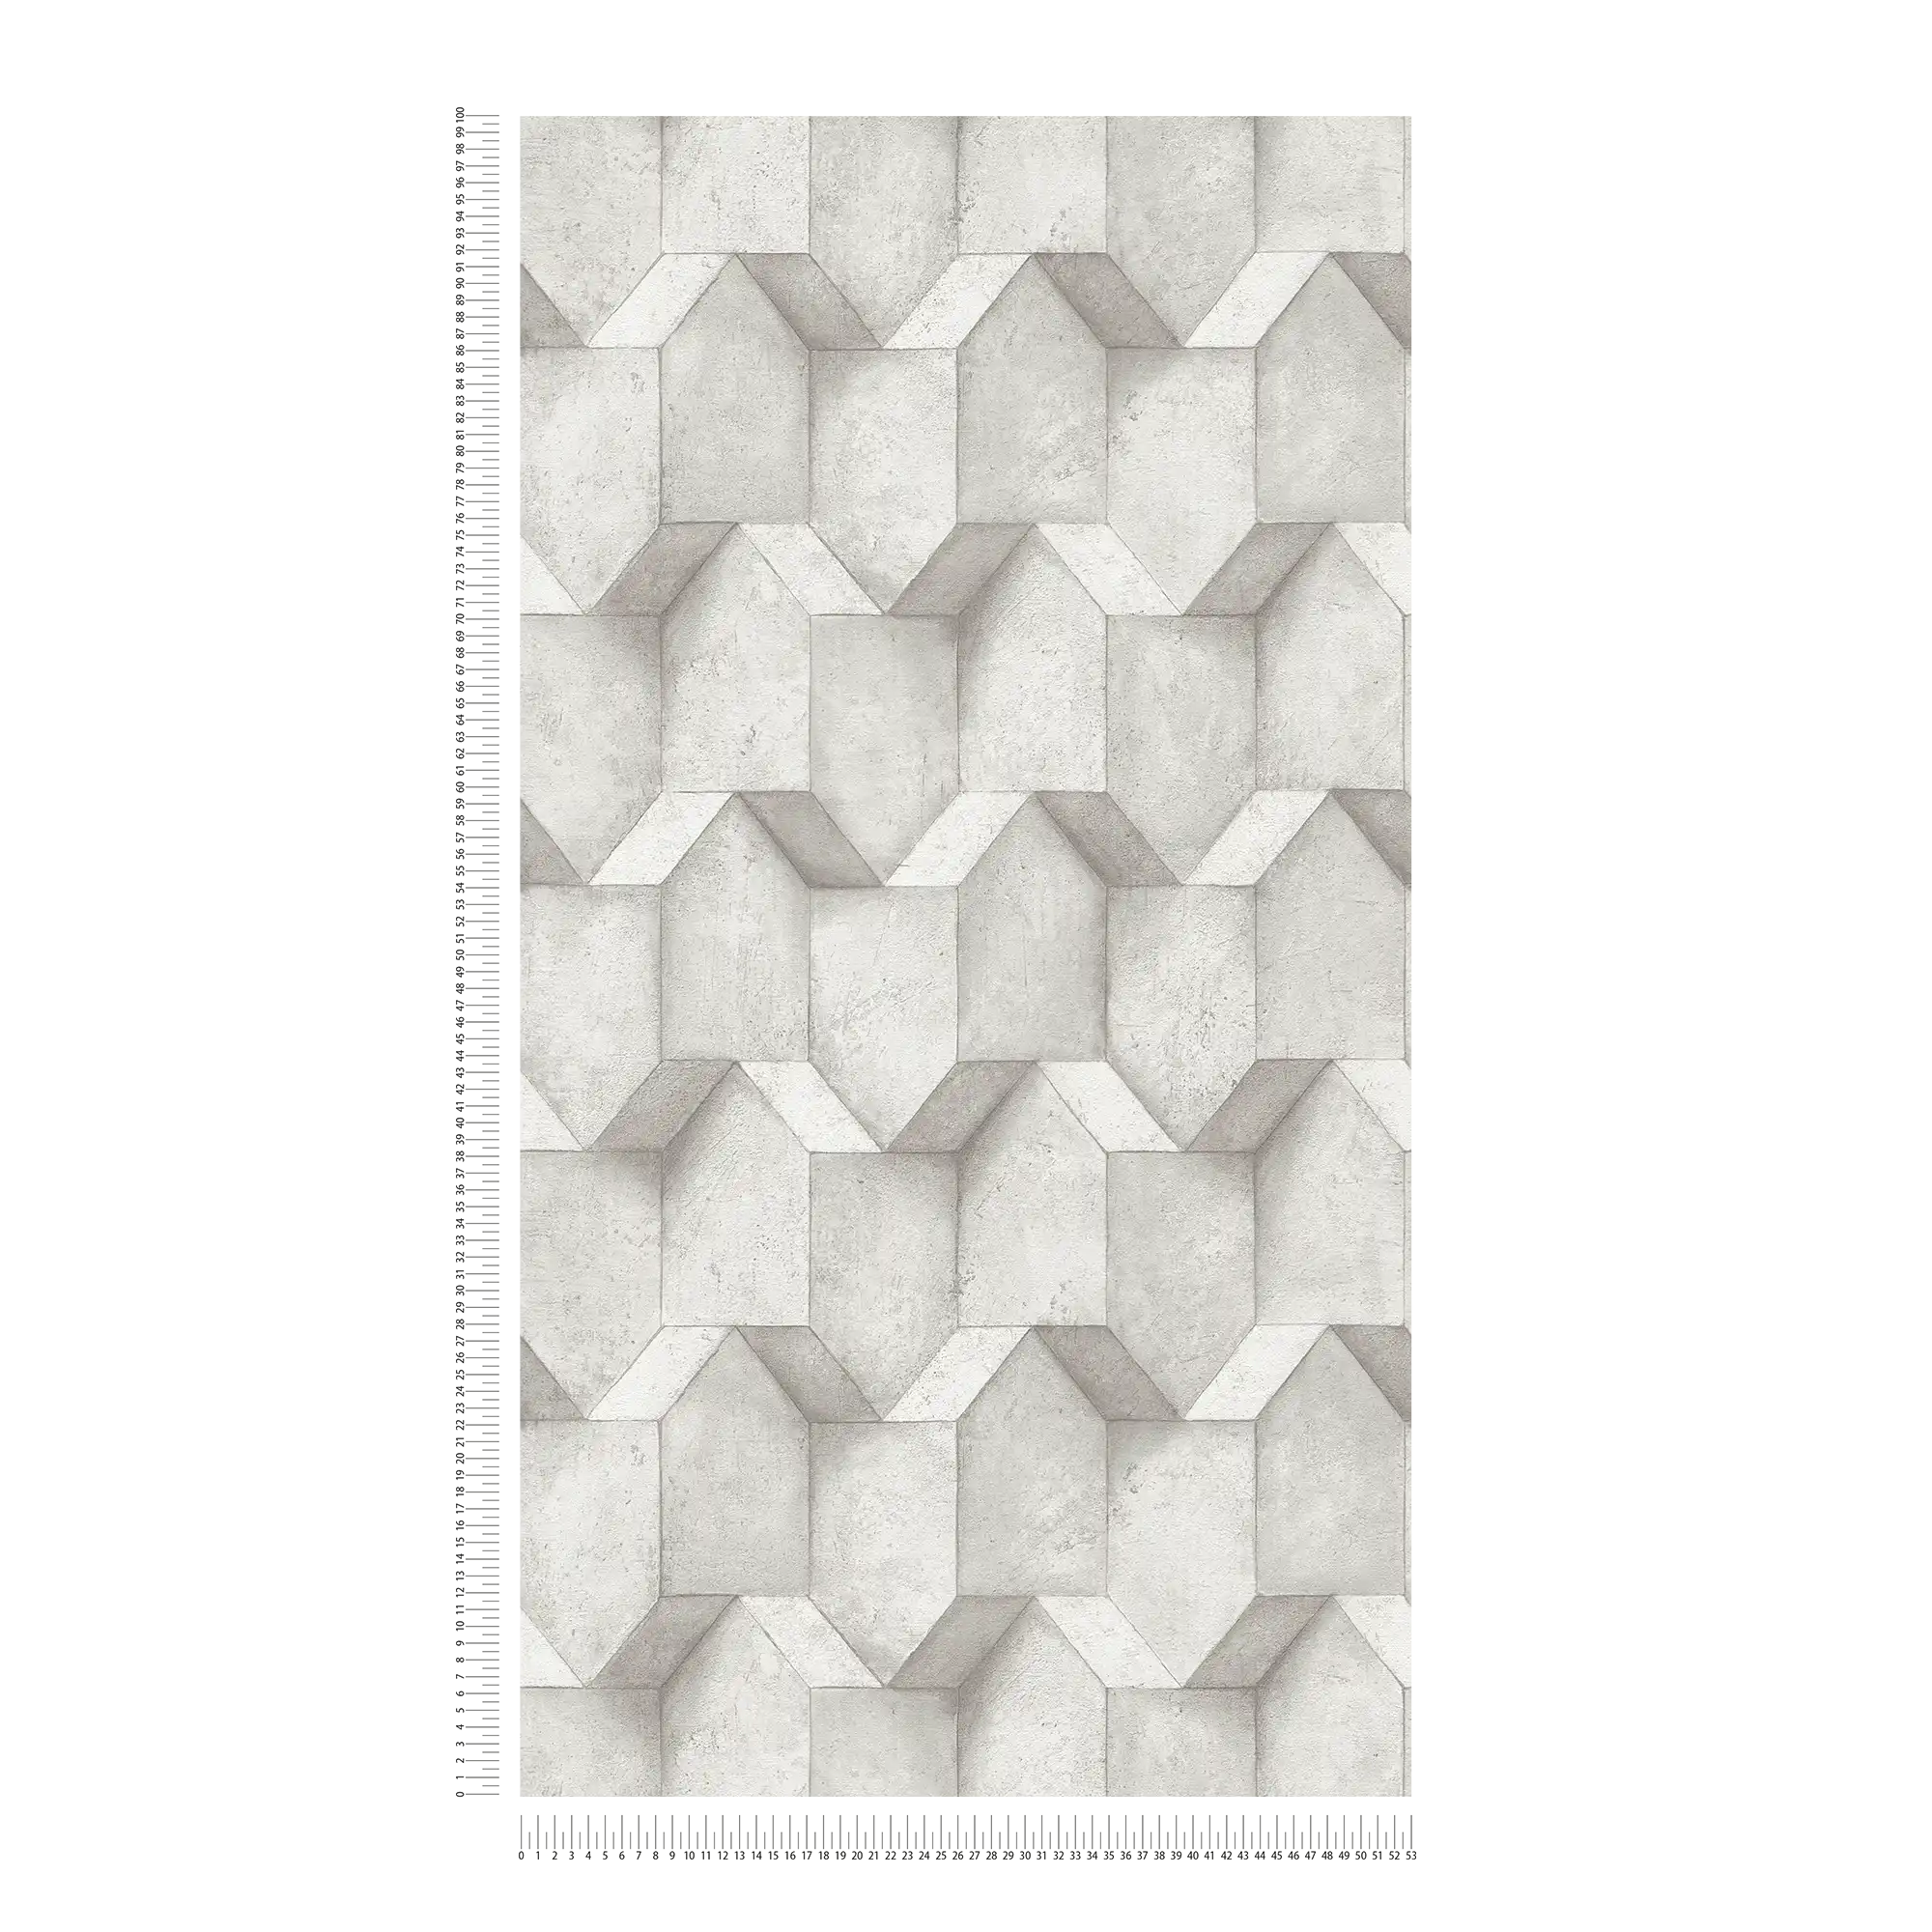             3D-behang kalksteen met structuurdesign - wit, grijs
        